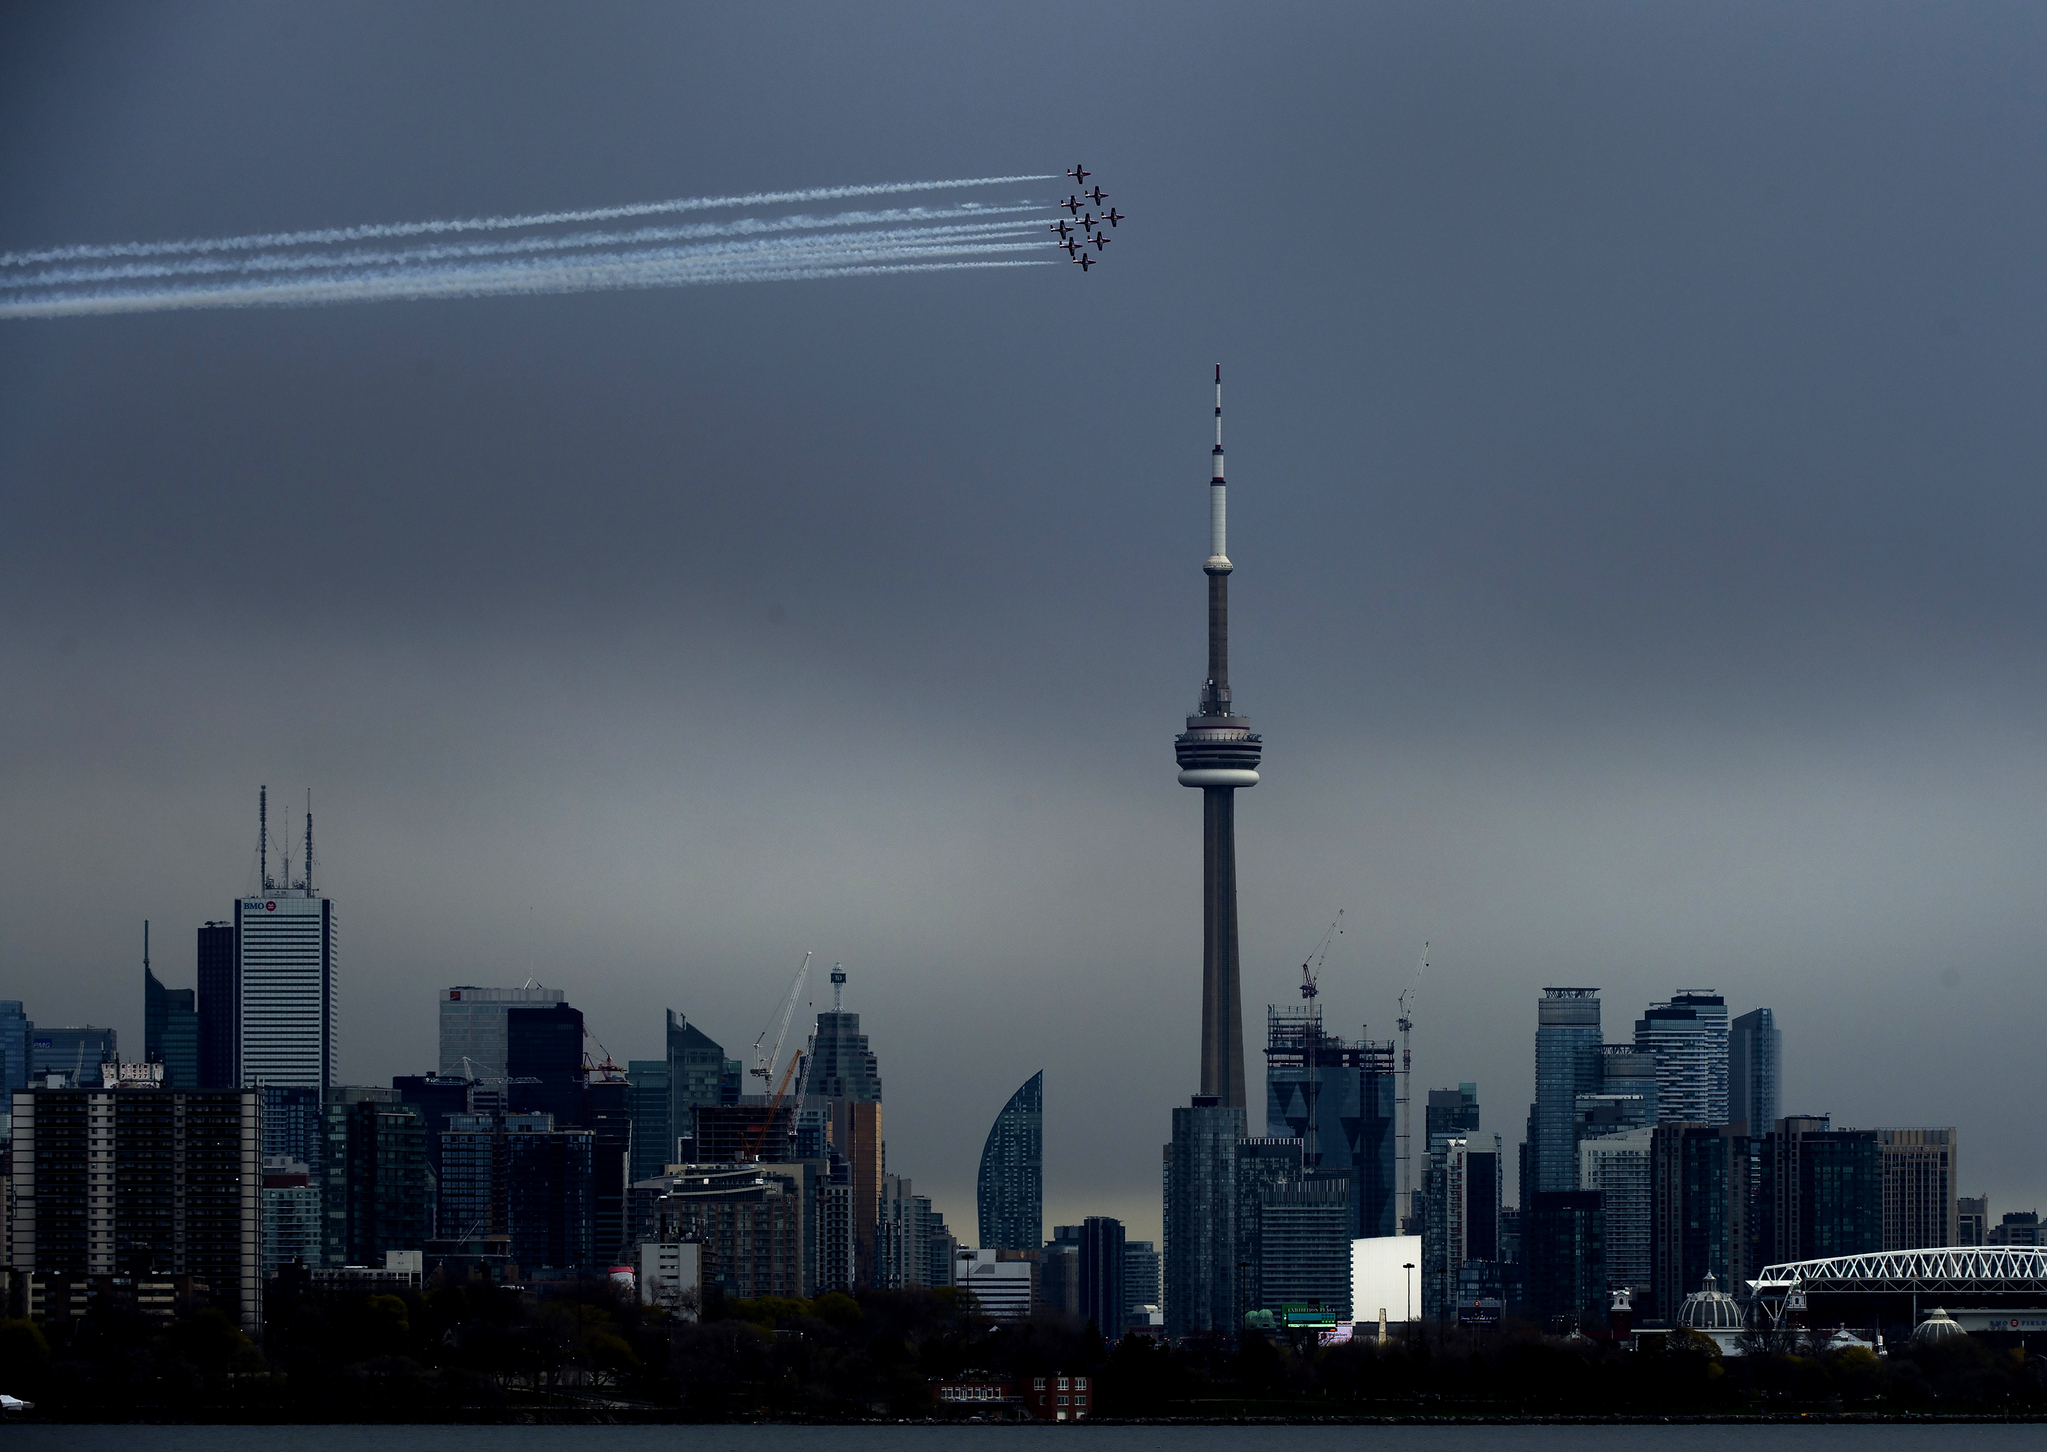 캐나다 공군 특수비행팀 스노우버드가 지난 10일 캐나다 토론토에서 코로나19와 분투하고 있는 국민들을 응원하기 위해 CN타워를 돌며 멋진 비행을 선보이고 있다. [AP=연합뉴스]